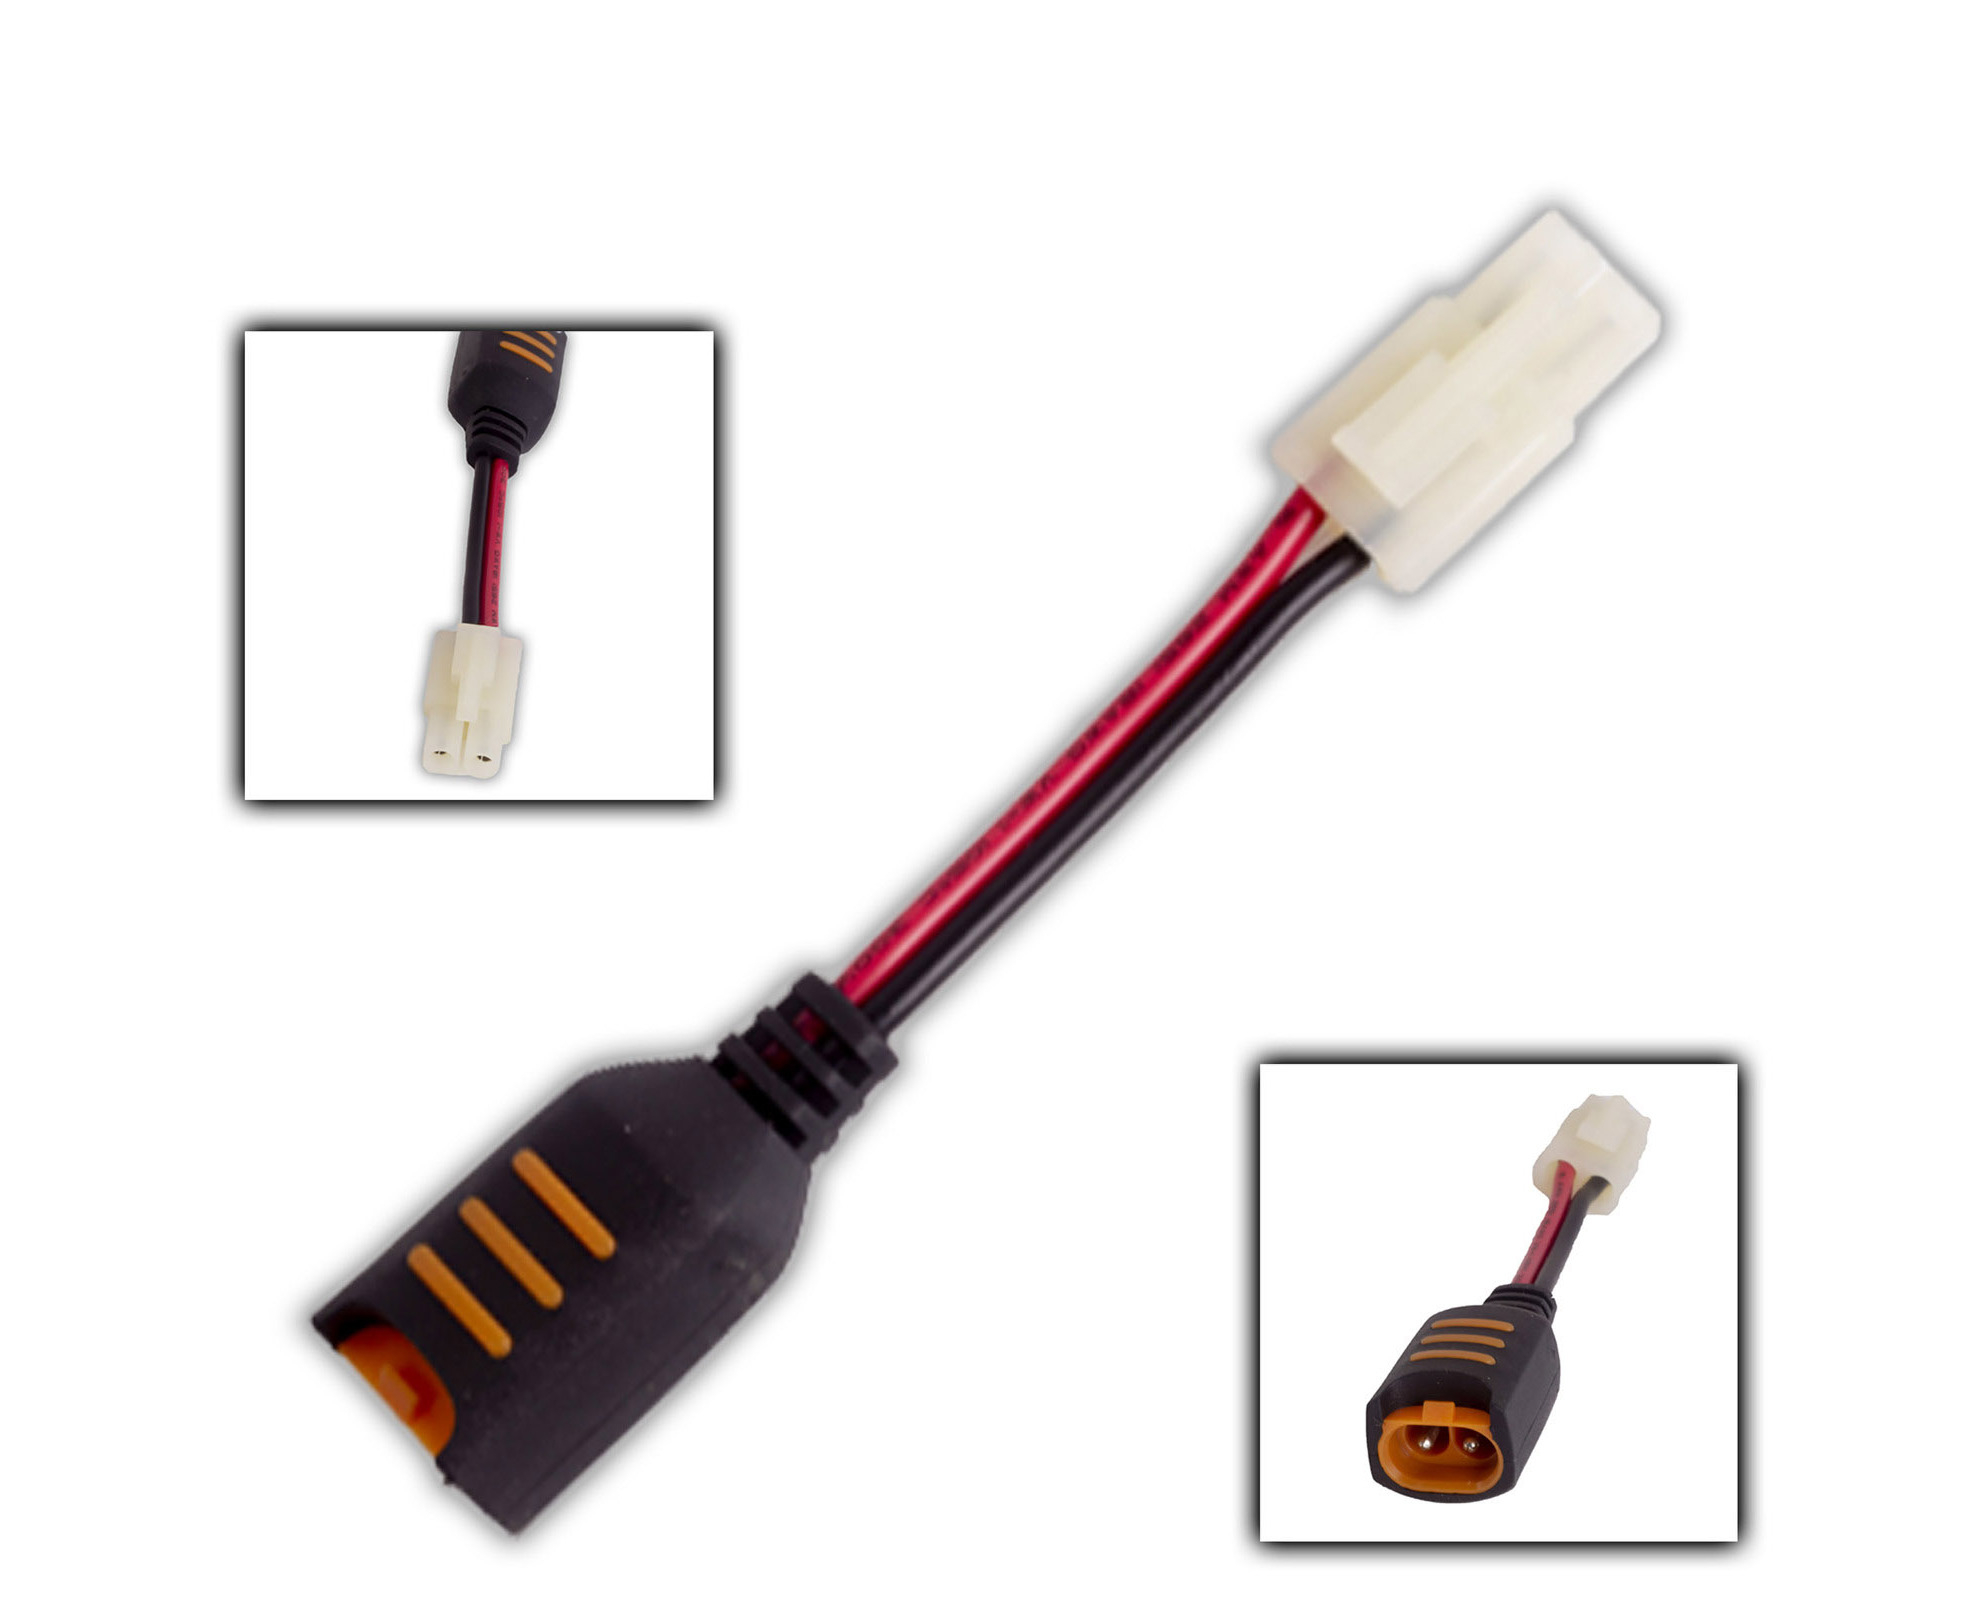 CTEK Comfort Connect plug adapter CTEK056-689 günstig online kaufen